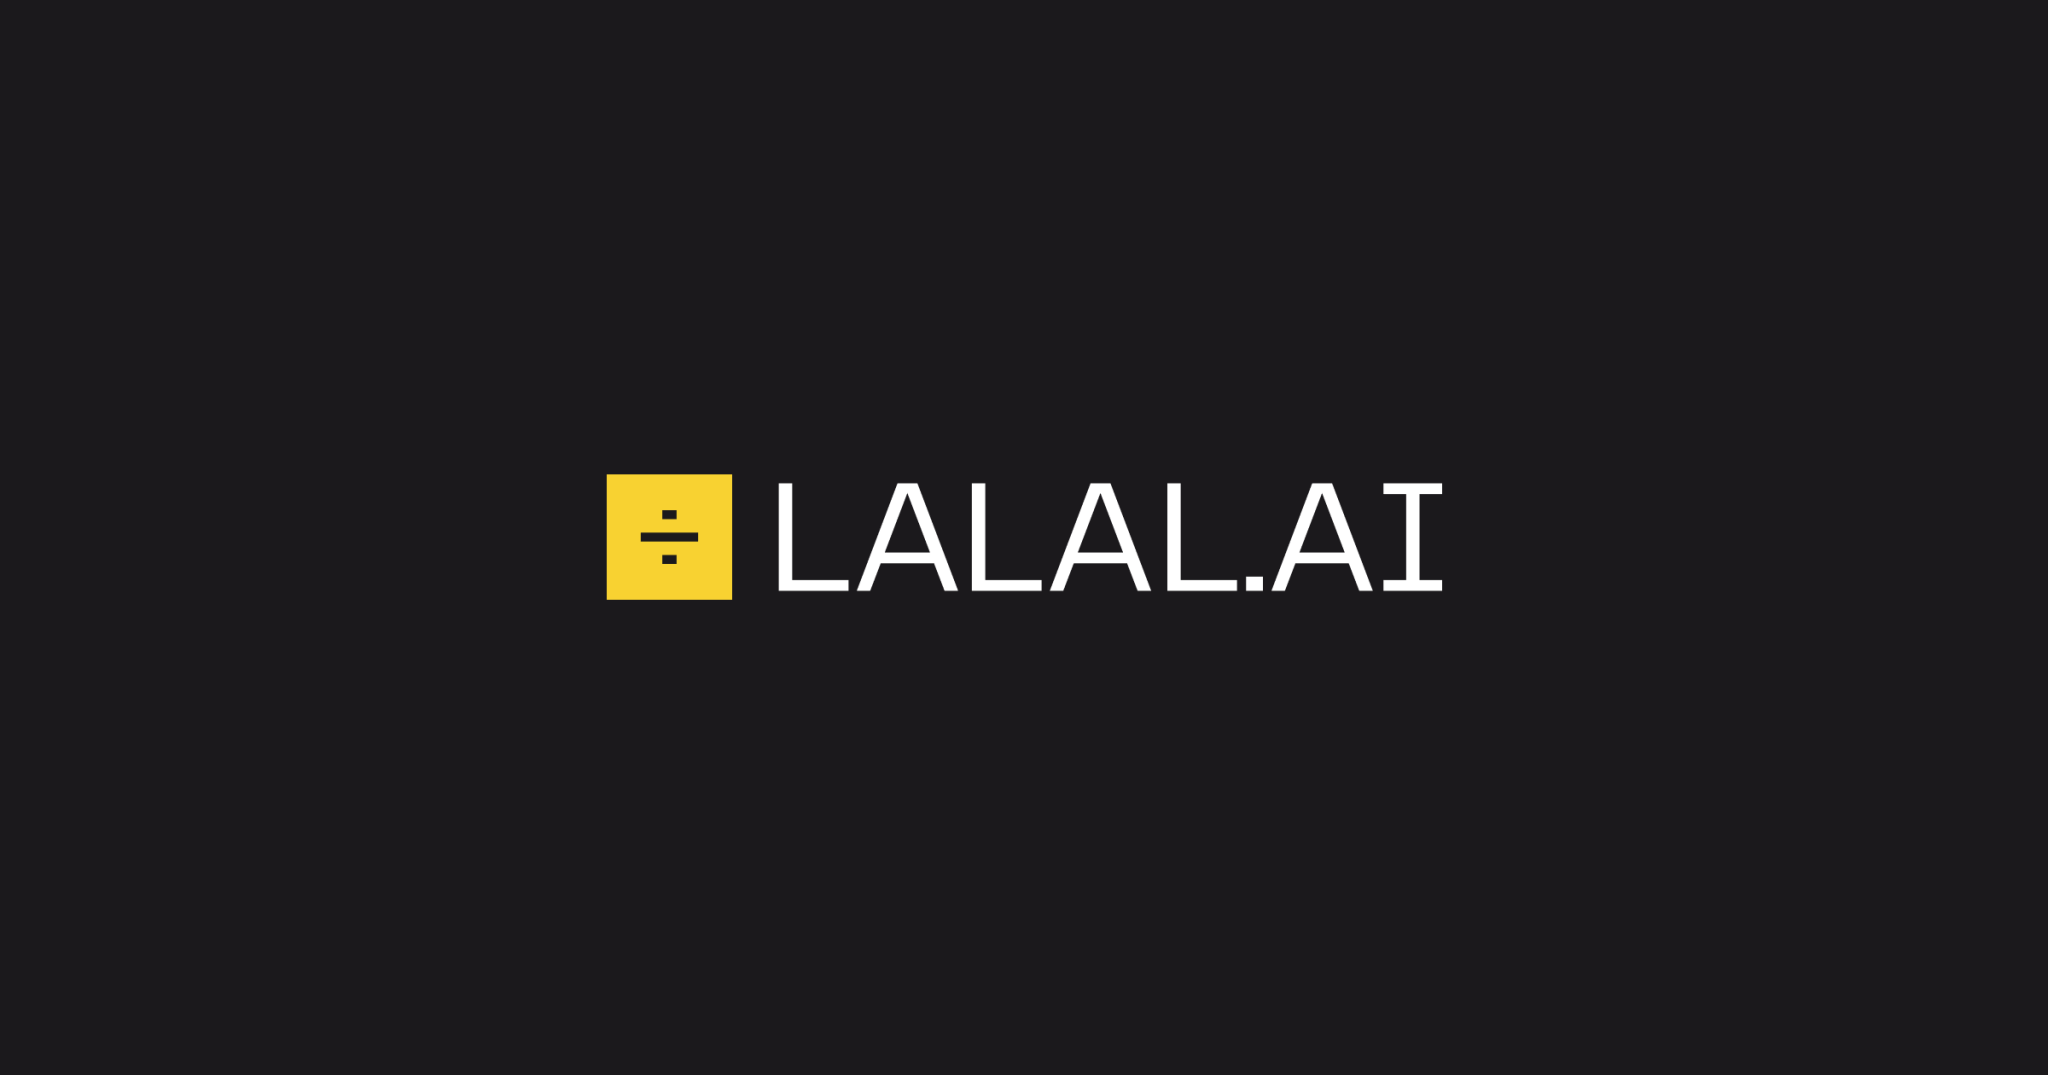 LALAL: Separa el instrumental y voces en archivos separados